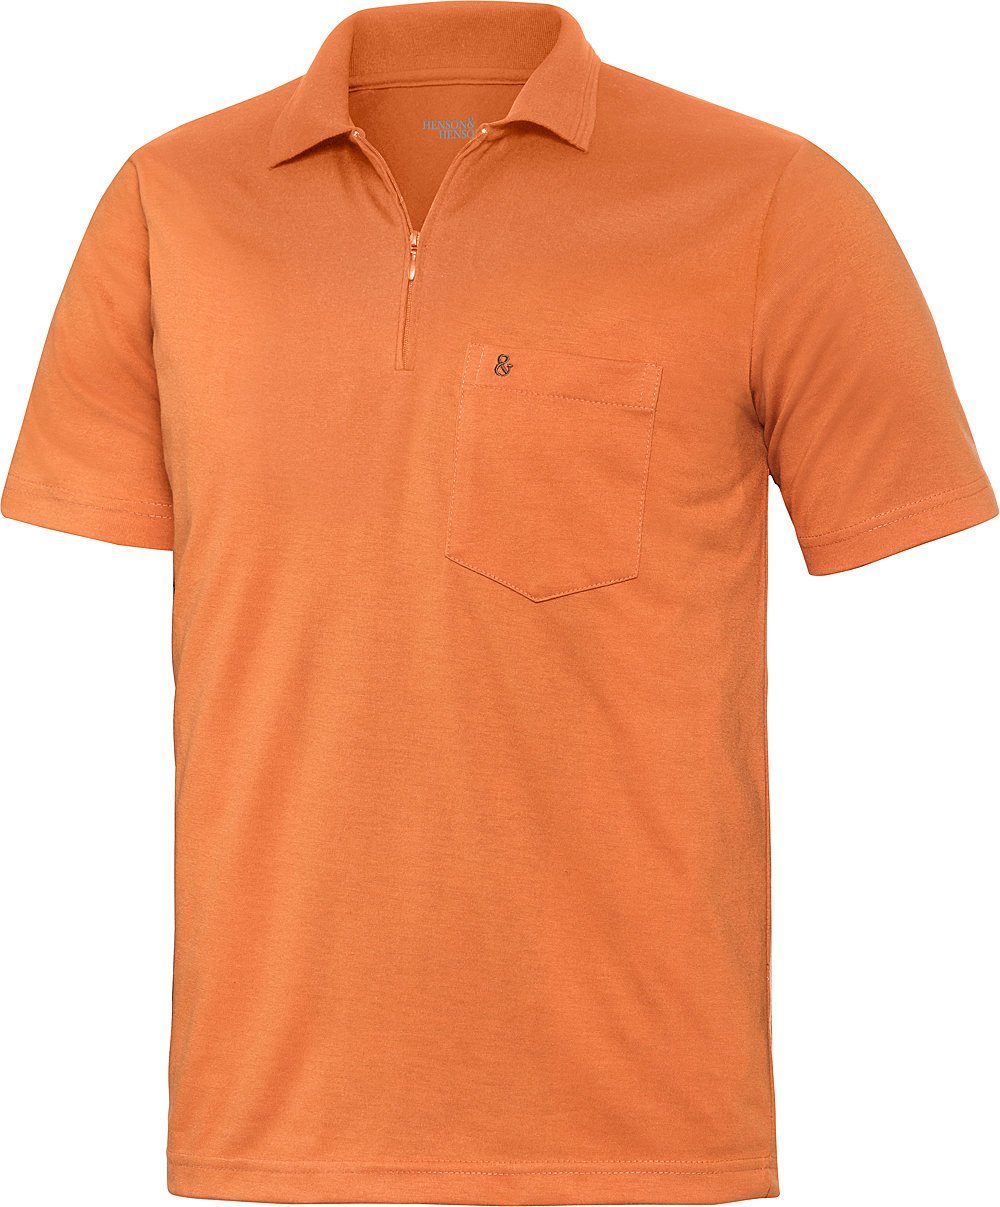 HENSON&HENSON Poloshirt Superweiches Jersey-Gewebe orange